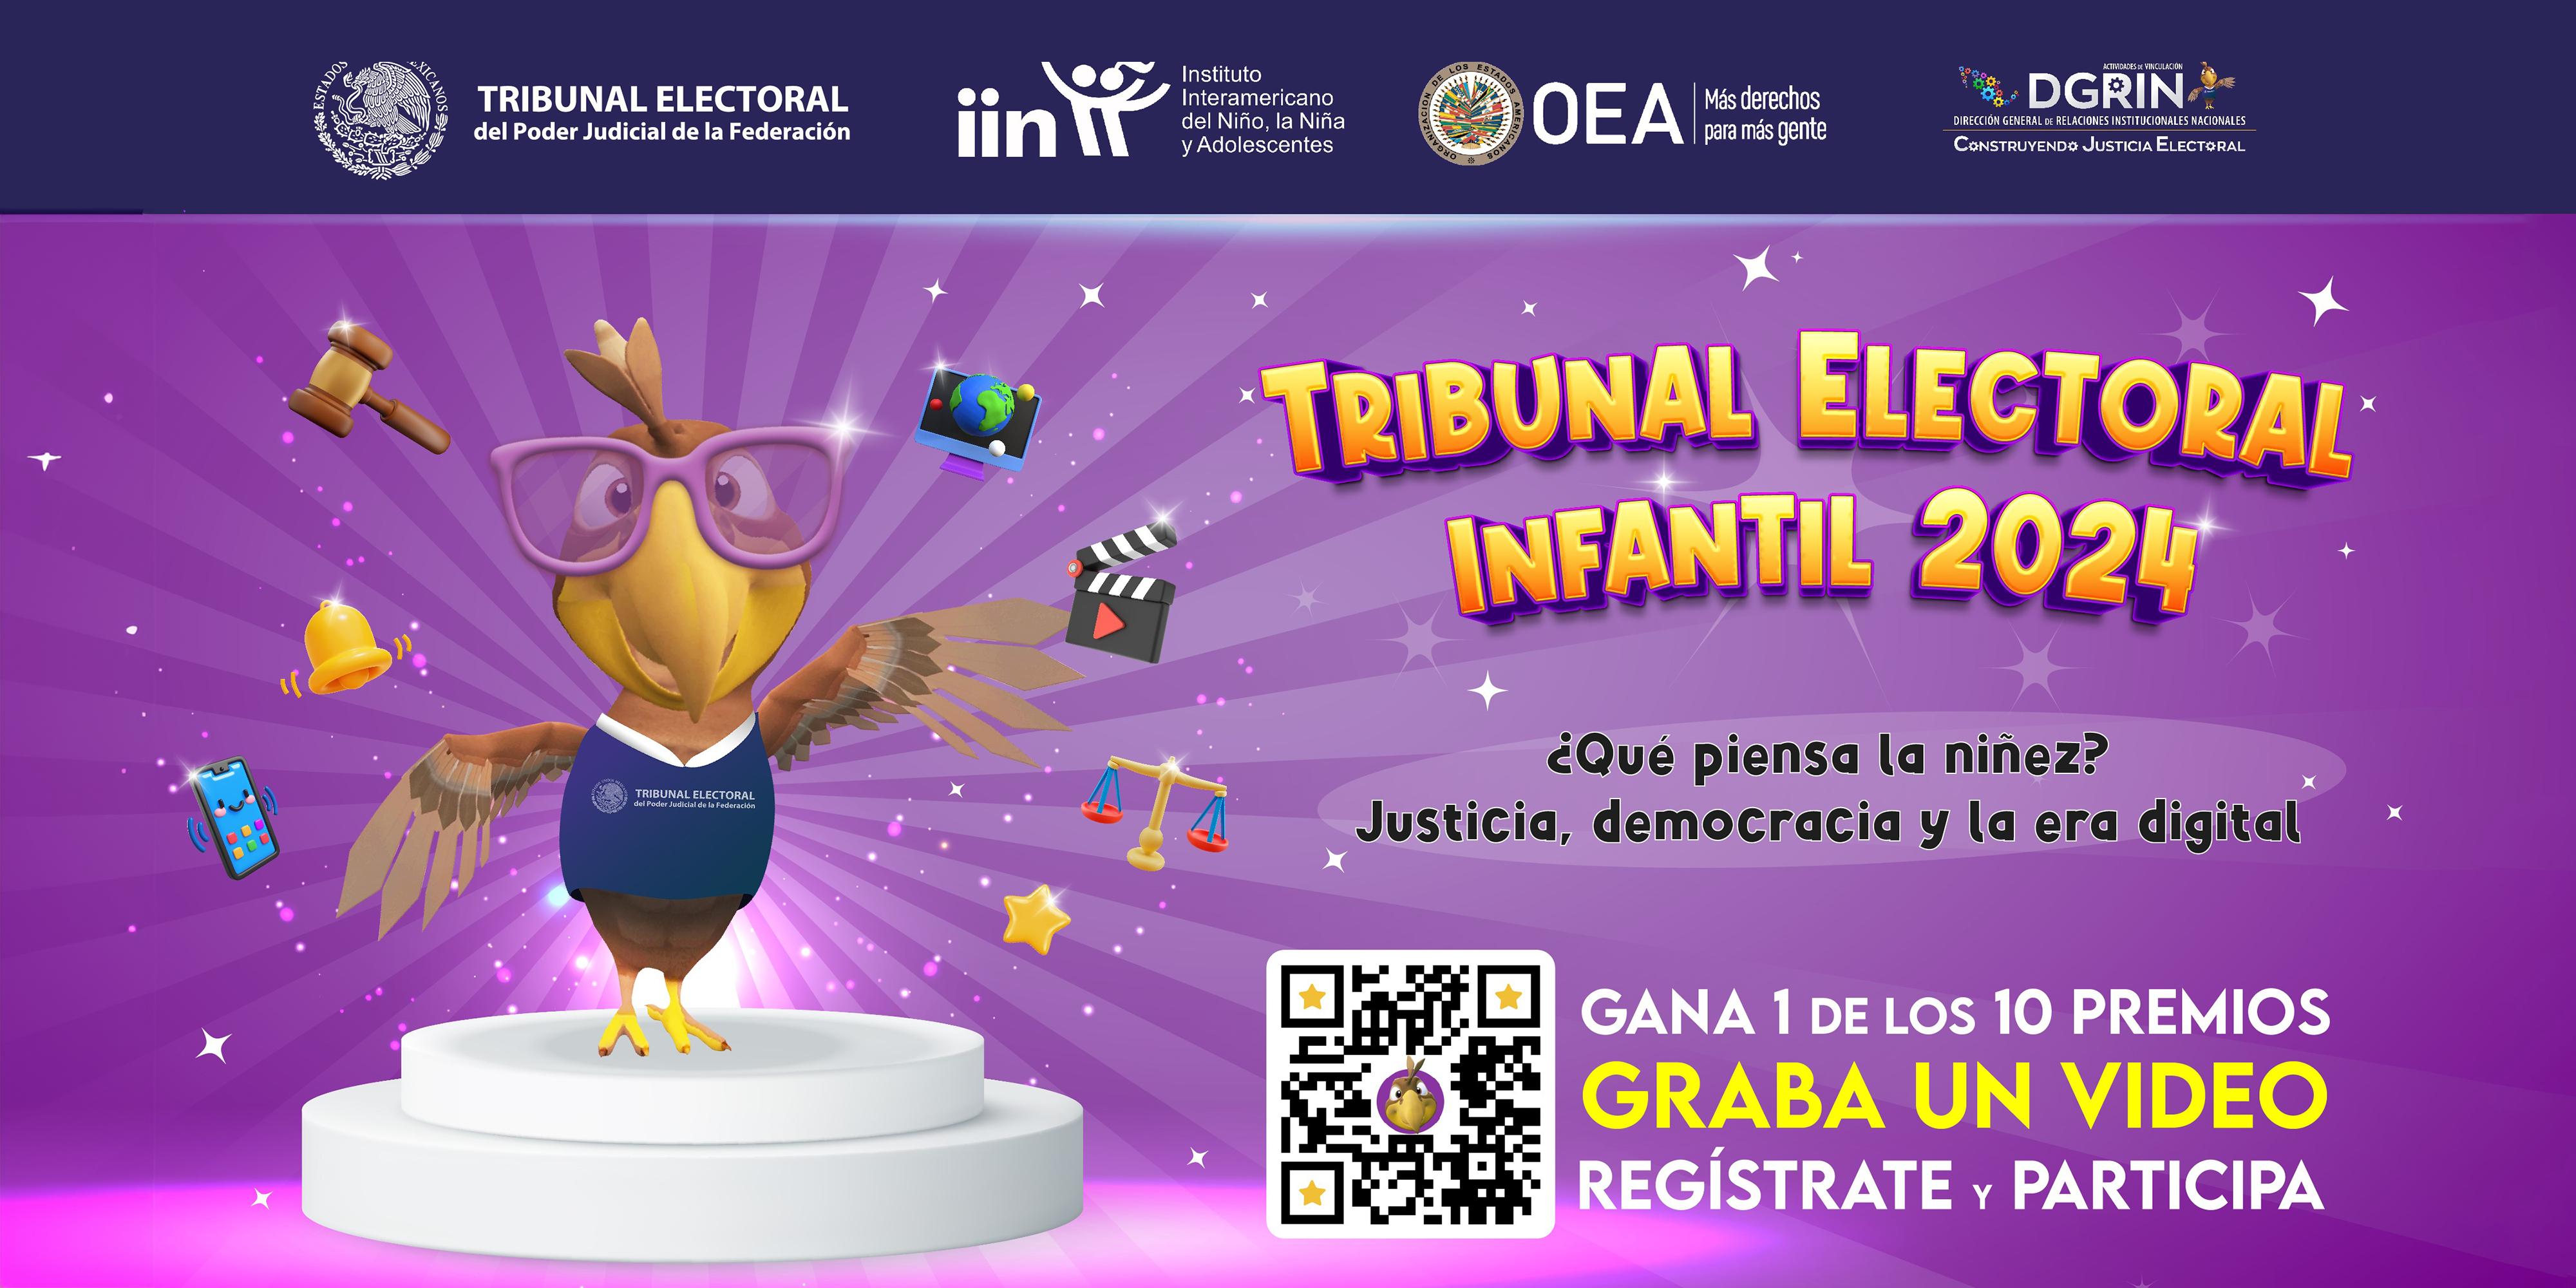 Tribunal Electoral Infantil 2024